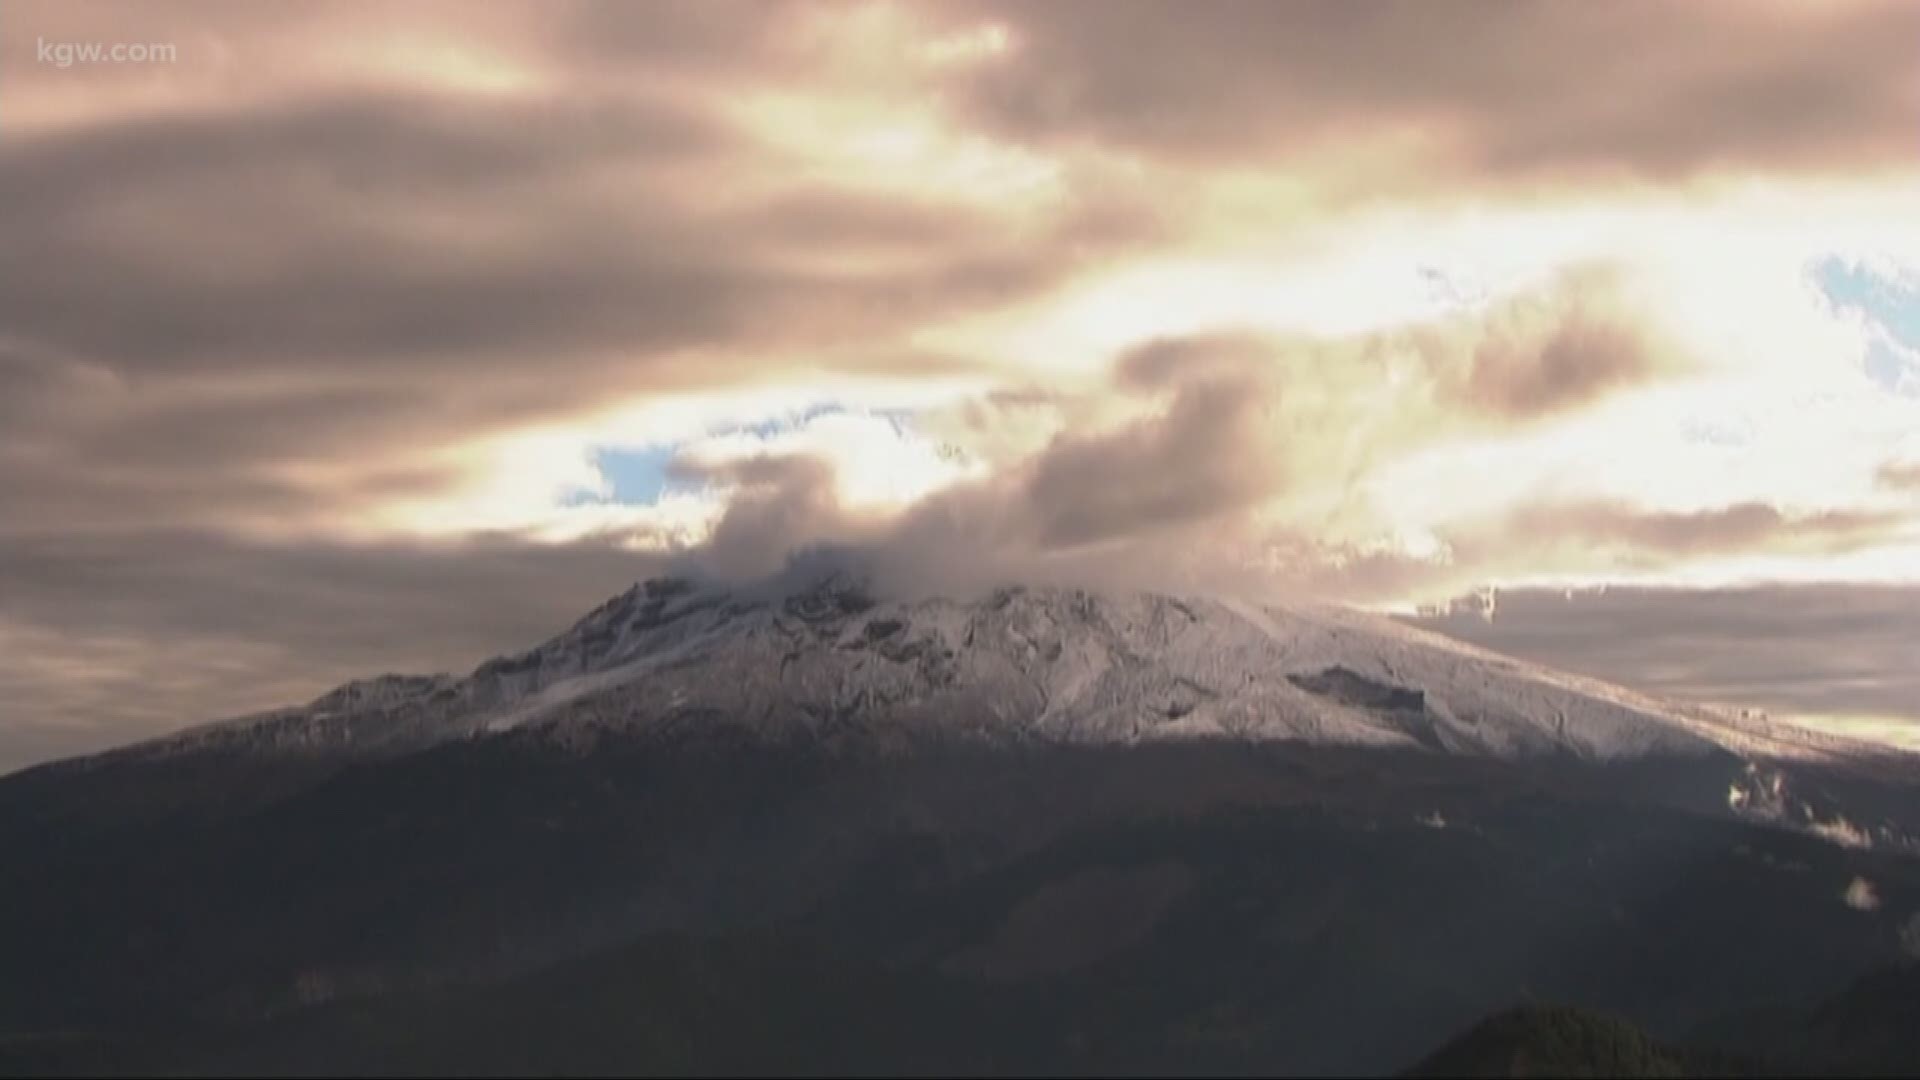 Mount Hood faults could create 7.2 earthquake